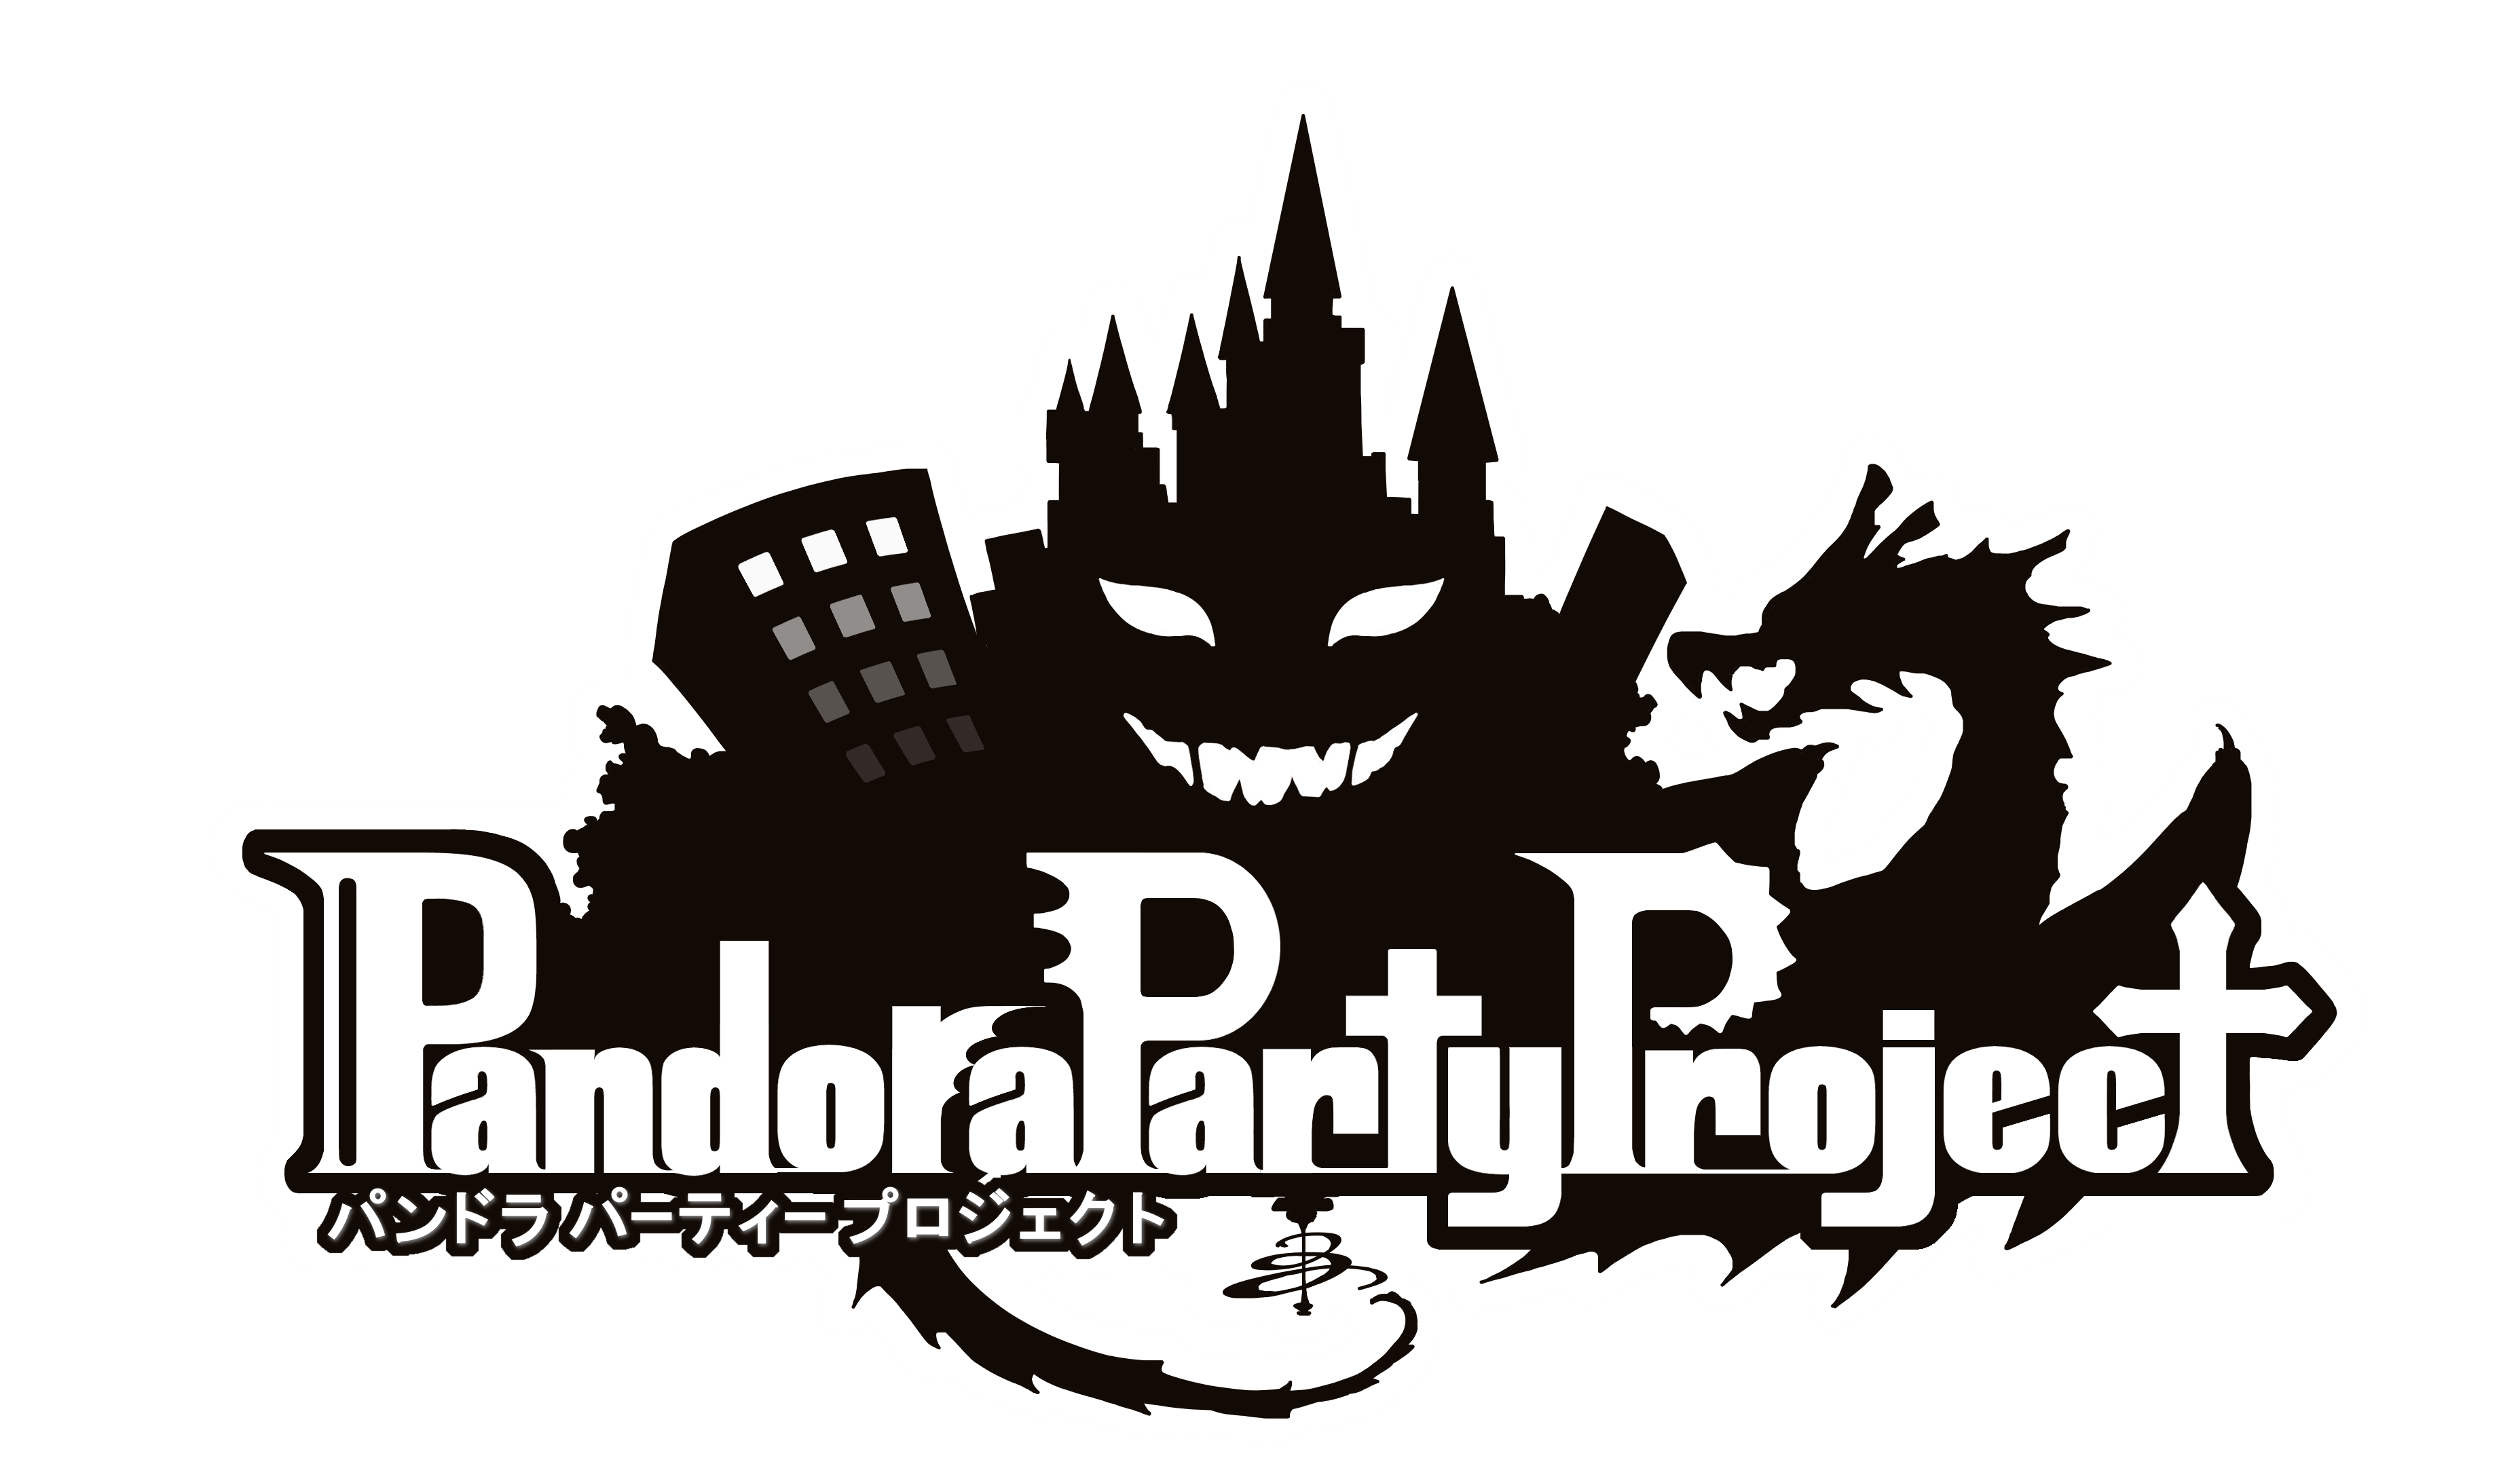 ご挨拶とpandora Party Project基本情報 Re Version